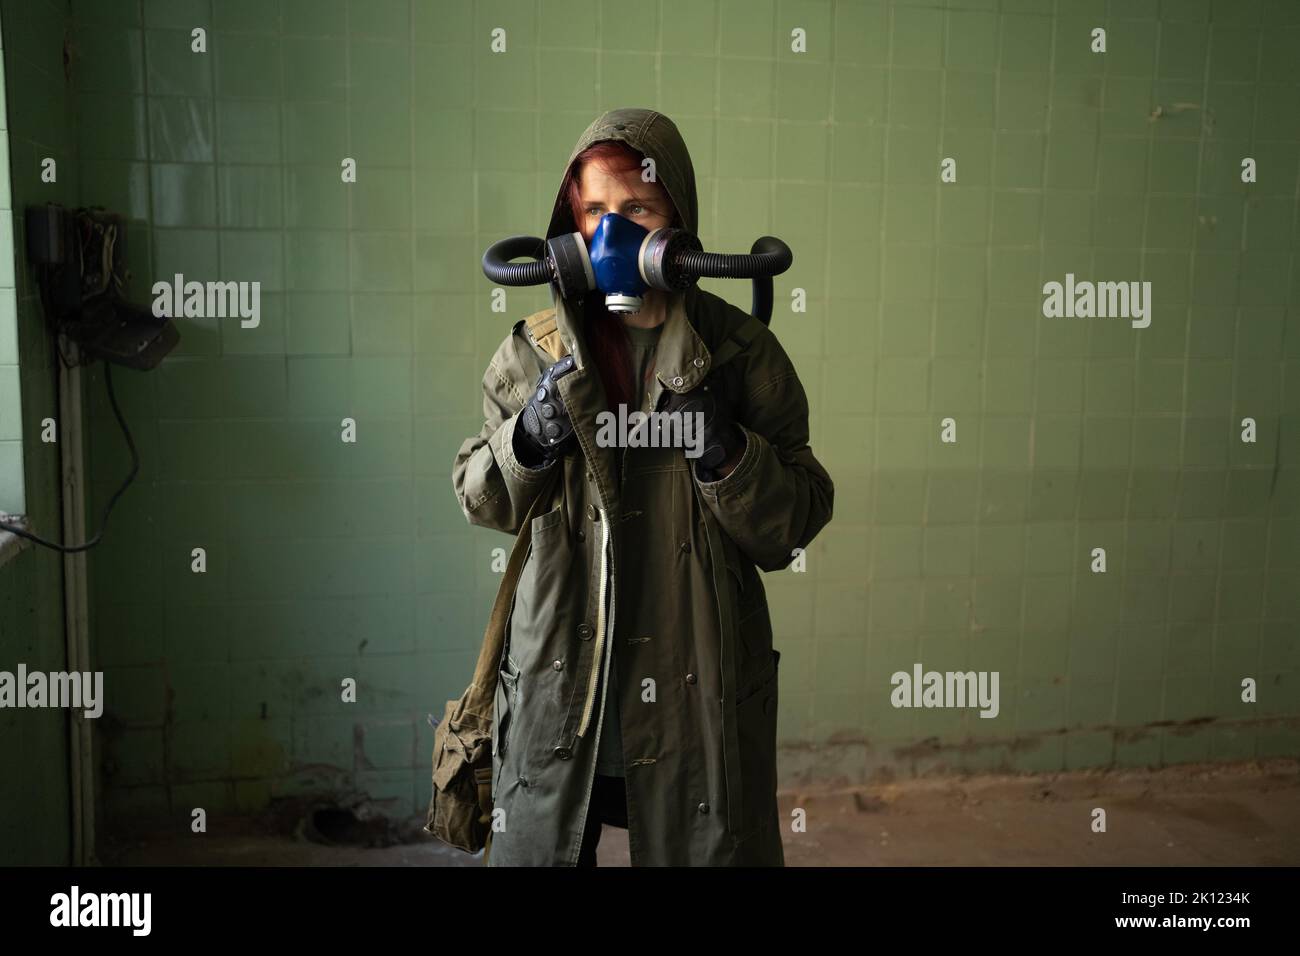 Post apocalypse femme survivante dans le masque à gaz sur fond de mur. Copier l'espace. Pollution de l'air, catastrophe environnementale Banque D'Images